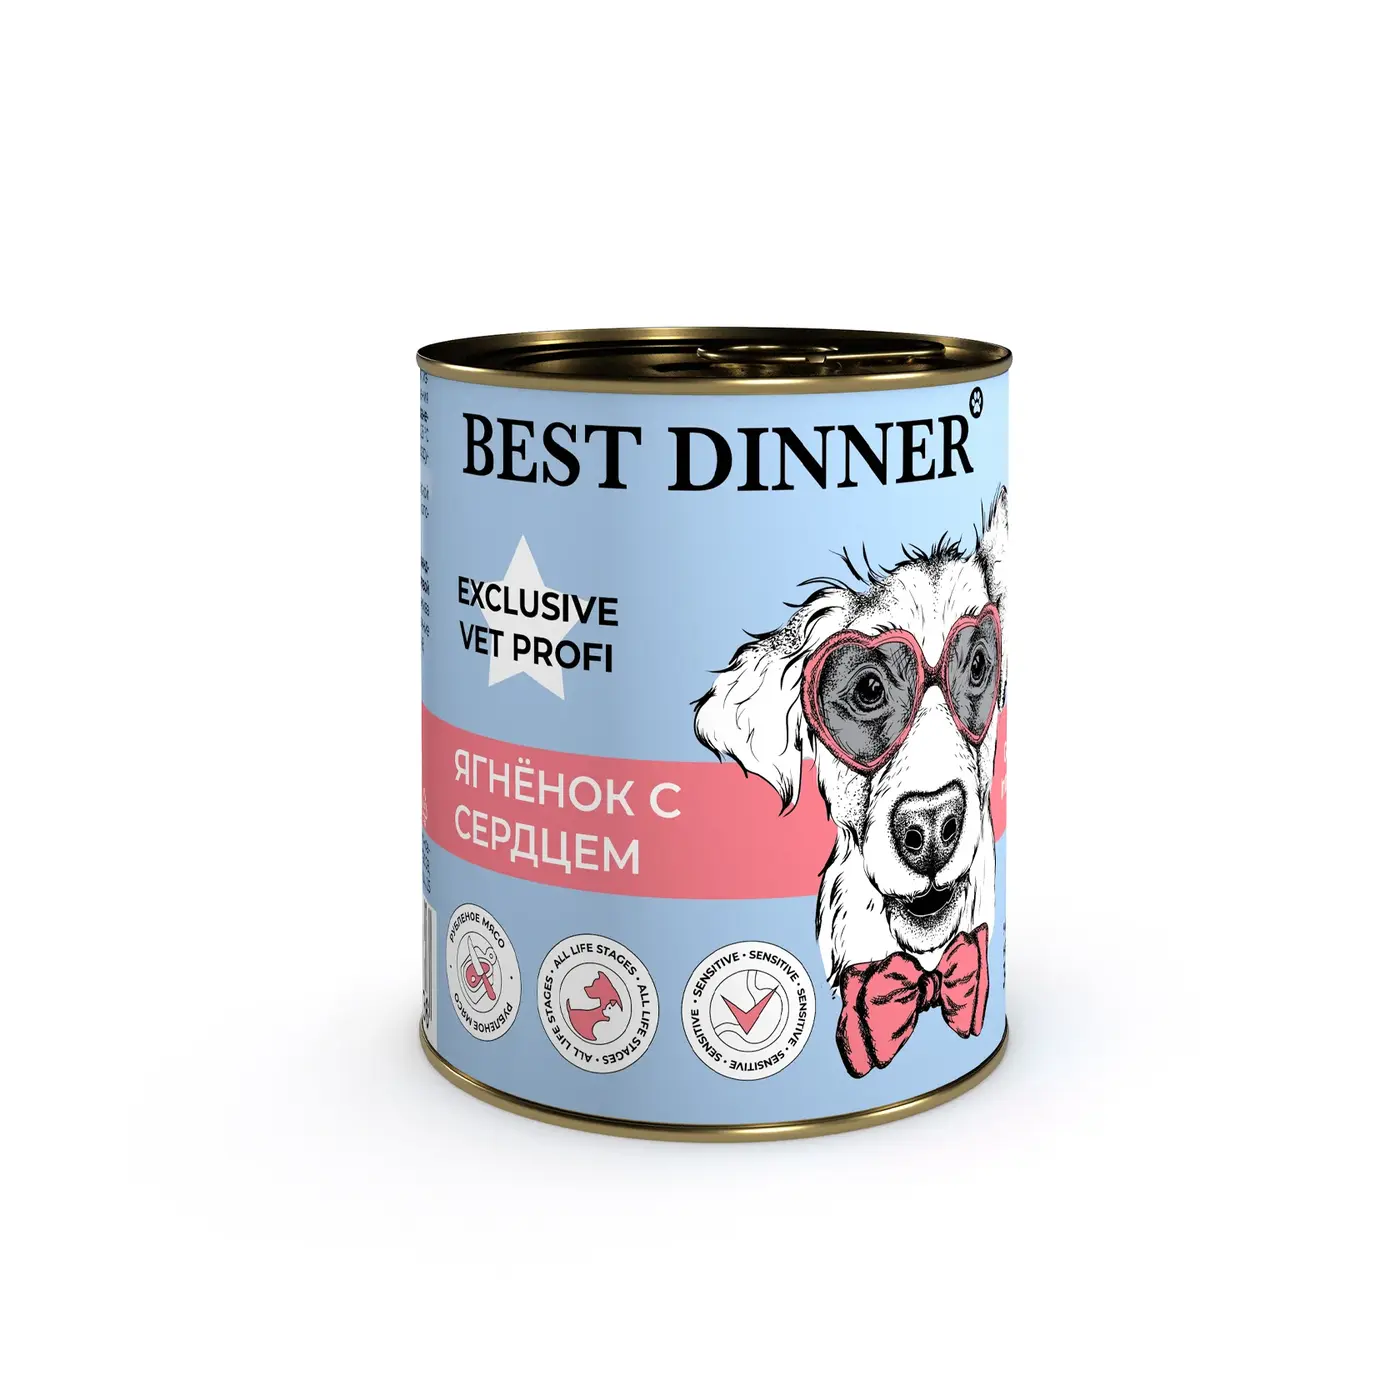 BEST DINNER Vet Profi Gastro Intestinal Exclusive для собак с чувствительным пищеварением ягненок с сердцем 340 г